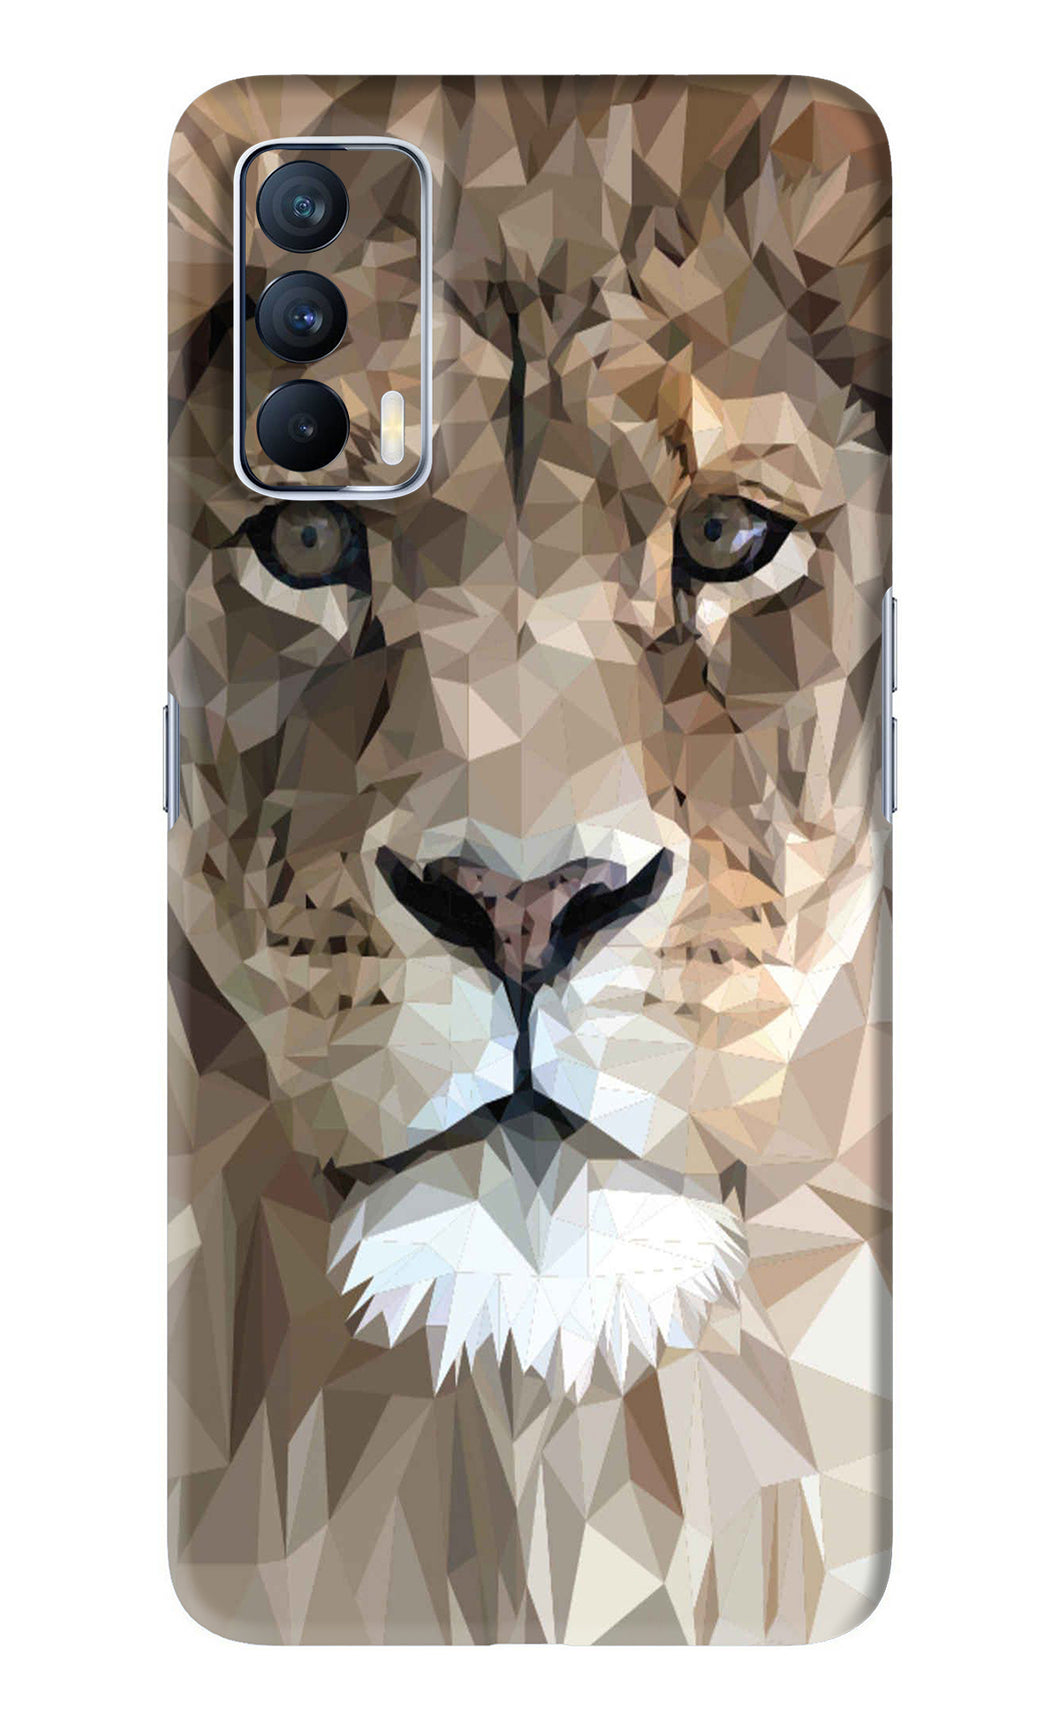 Lion Art Realme X7 Back Skin Wrap